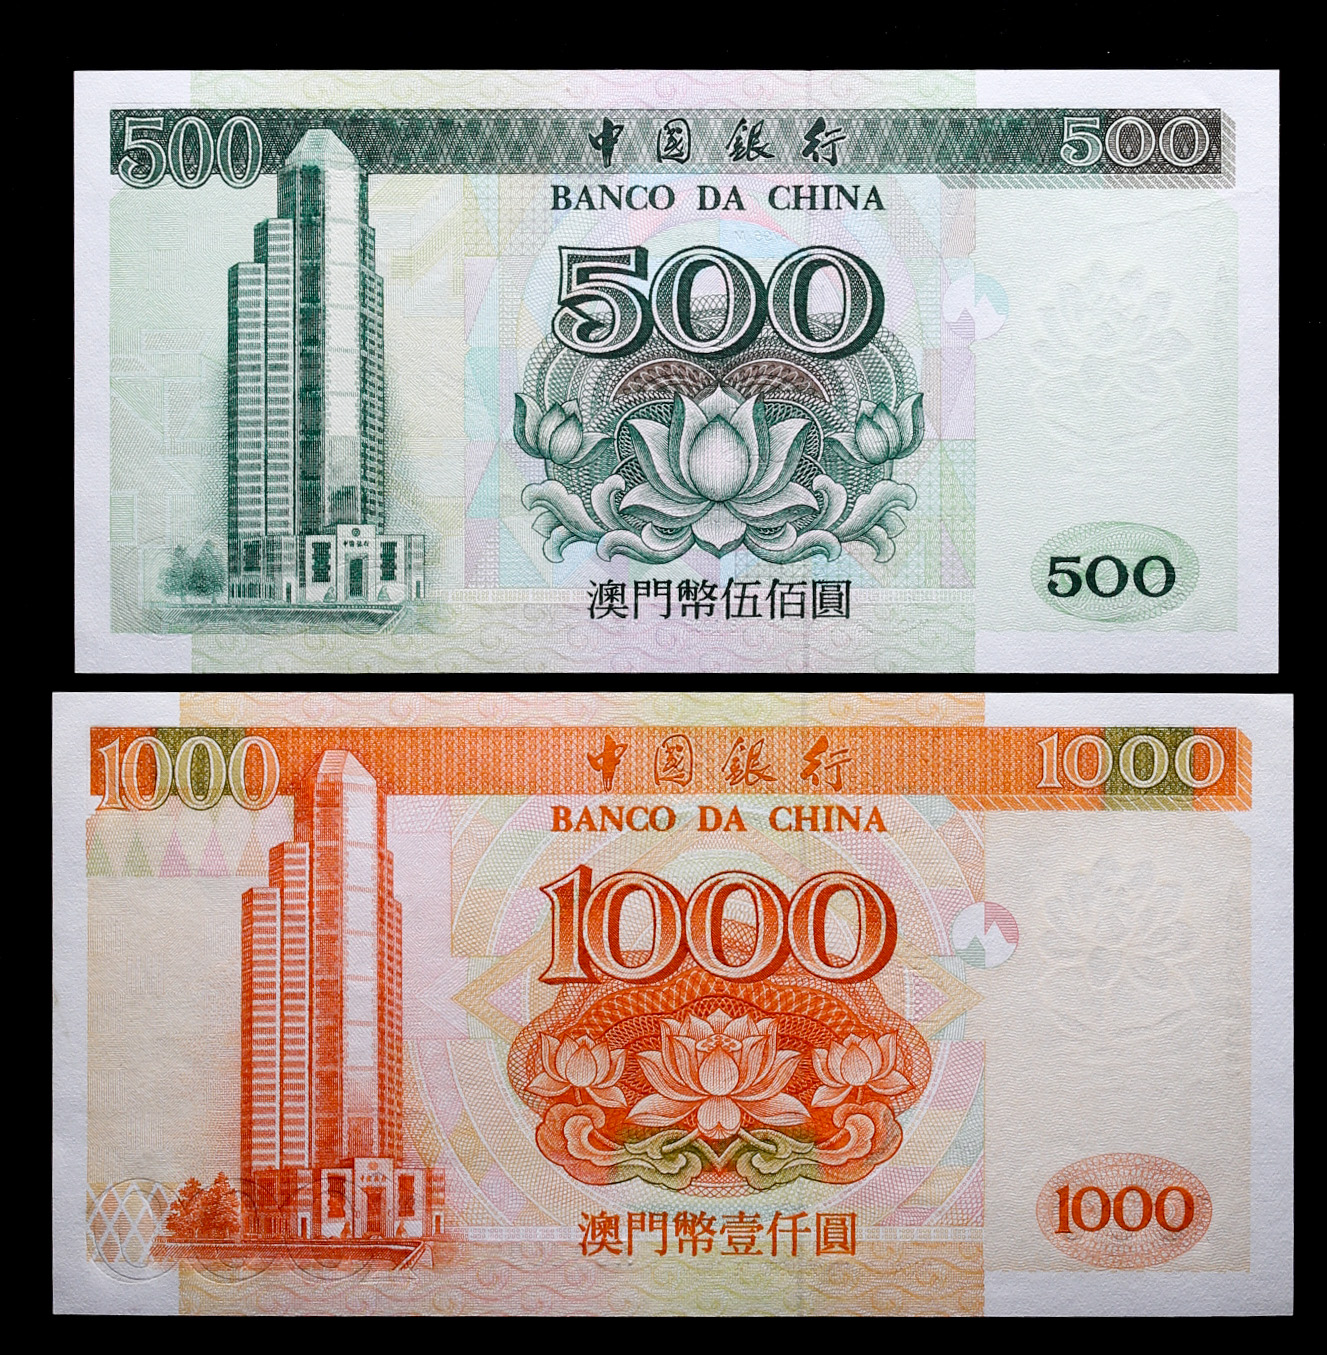 貨幣博物館 | 中國銀行 Banco da China マカオの紙幣2枚組 返品不可 Sold as is No returns